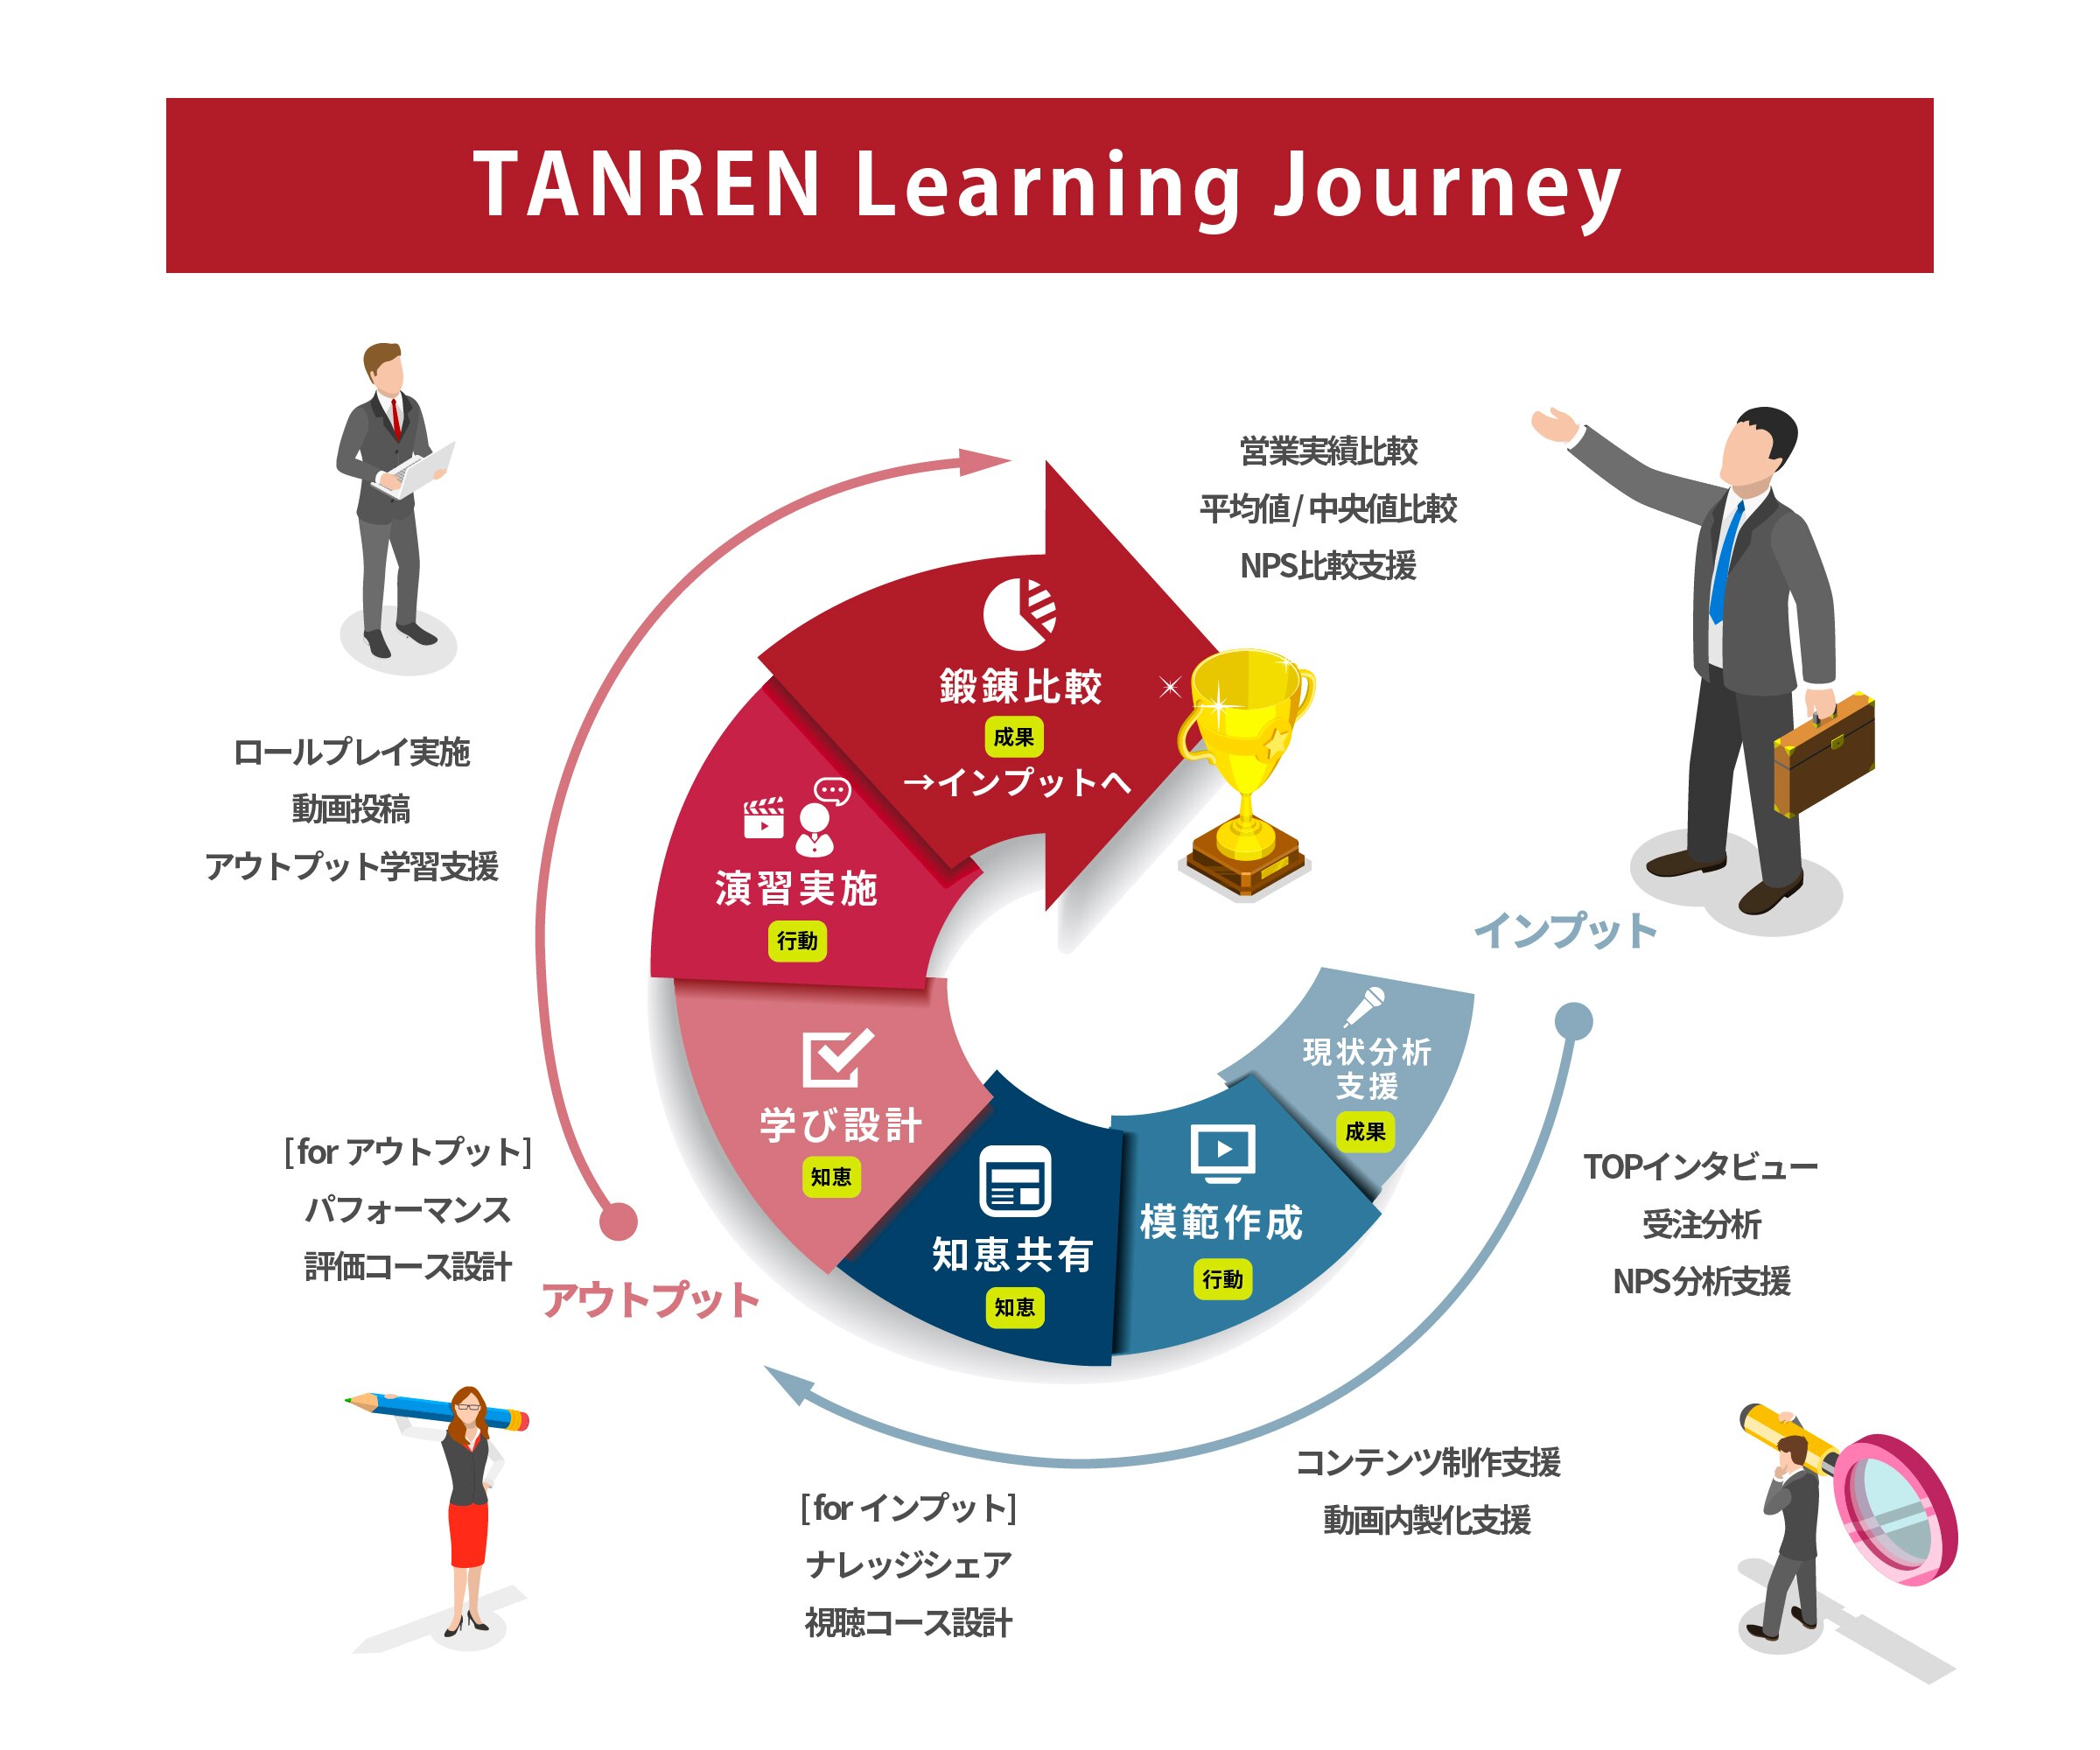 TANREN Learning Journey